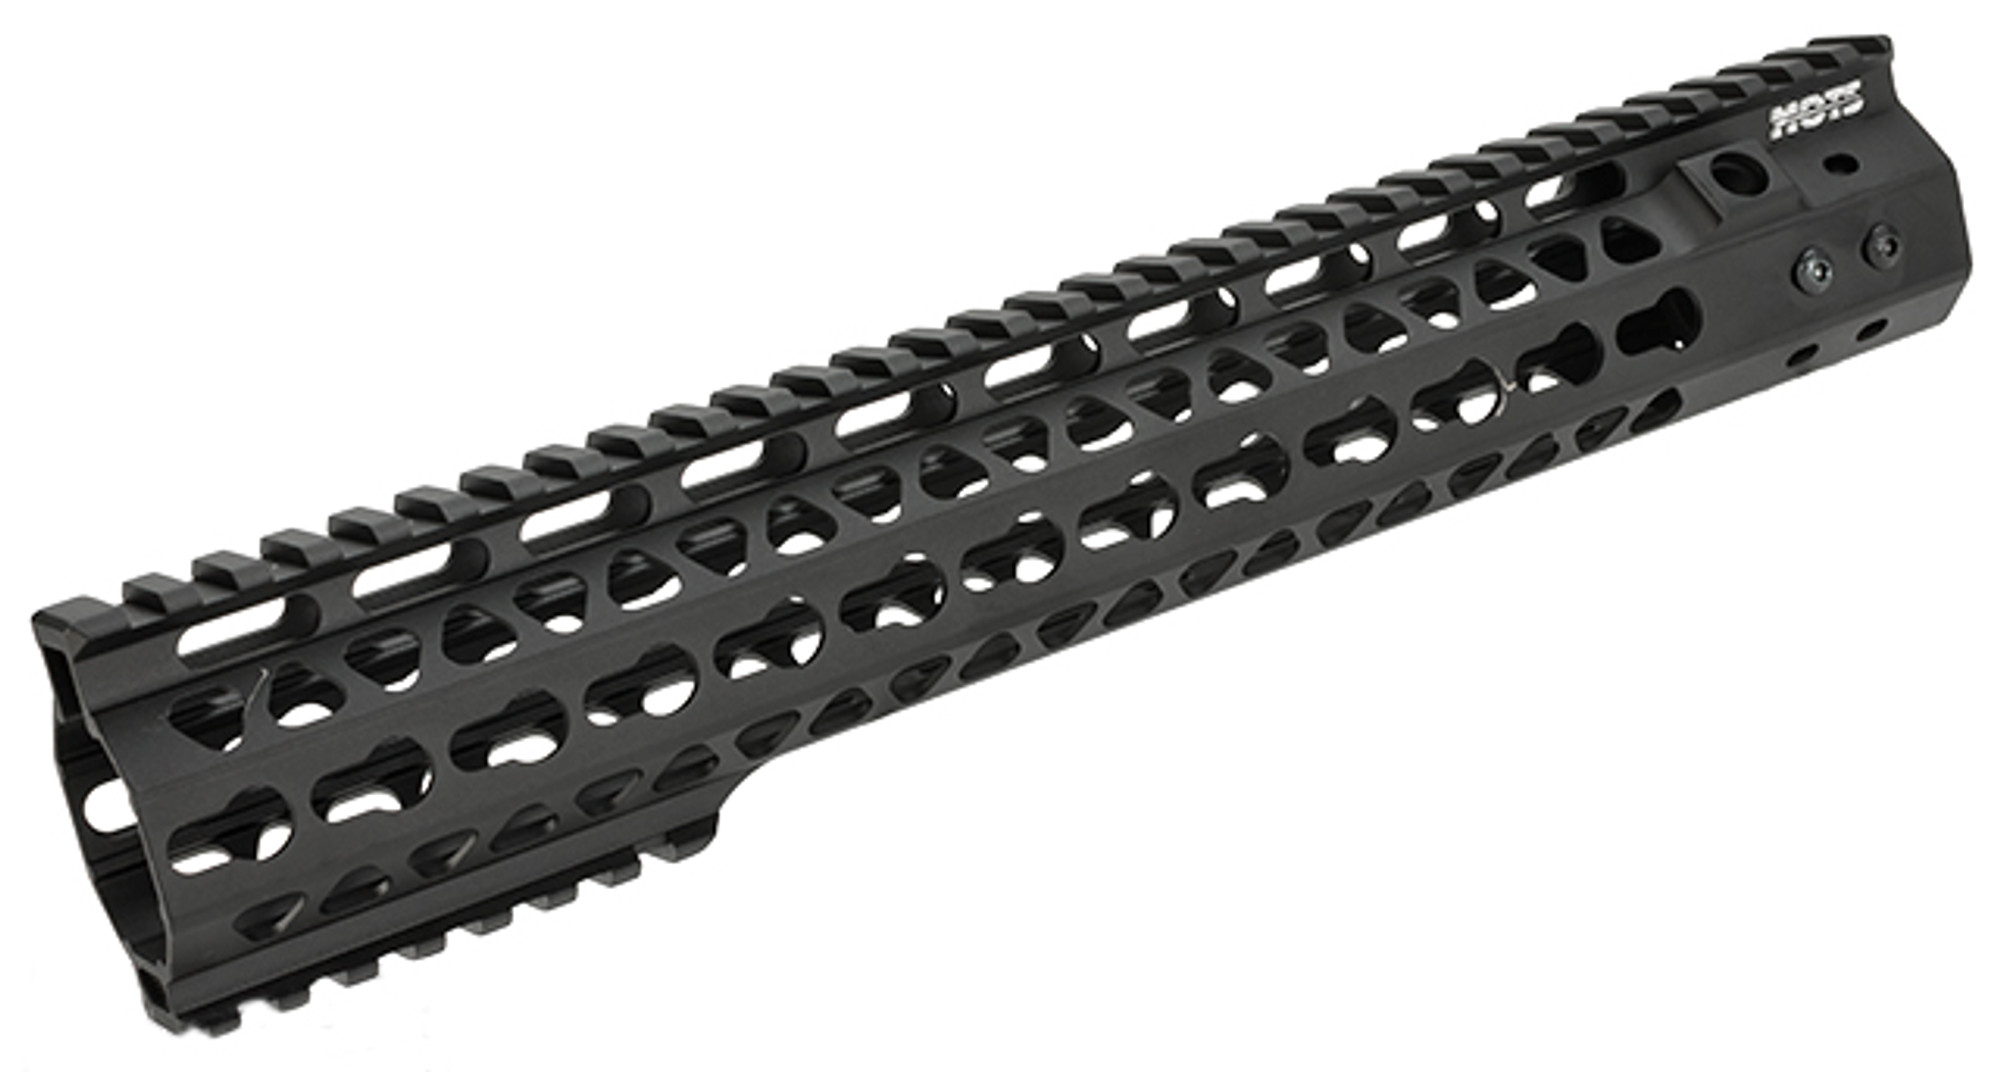 G&P MOTS 12.5" Keymod Rail System for M4 / M16 Series Airsoft Rifles - Black